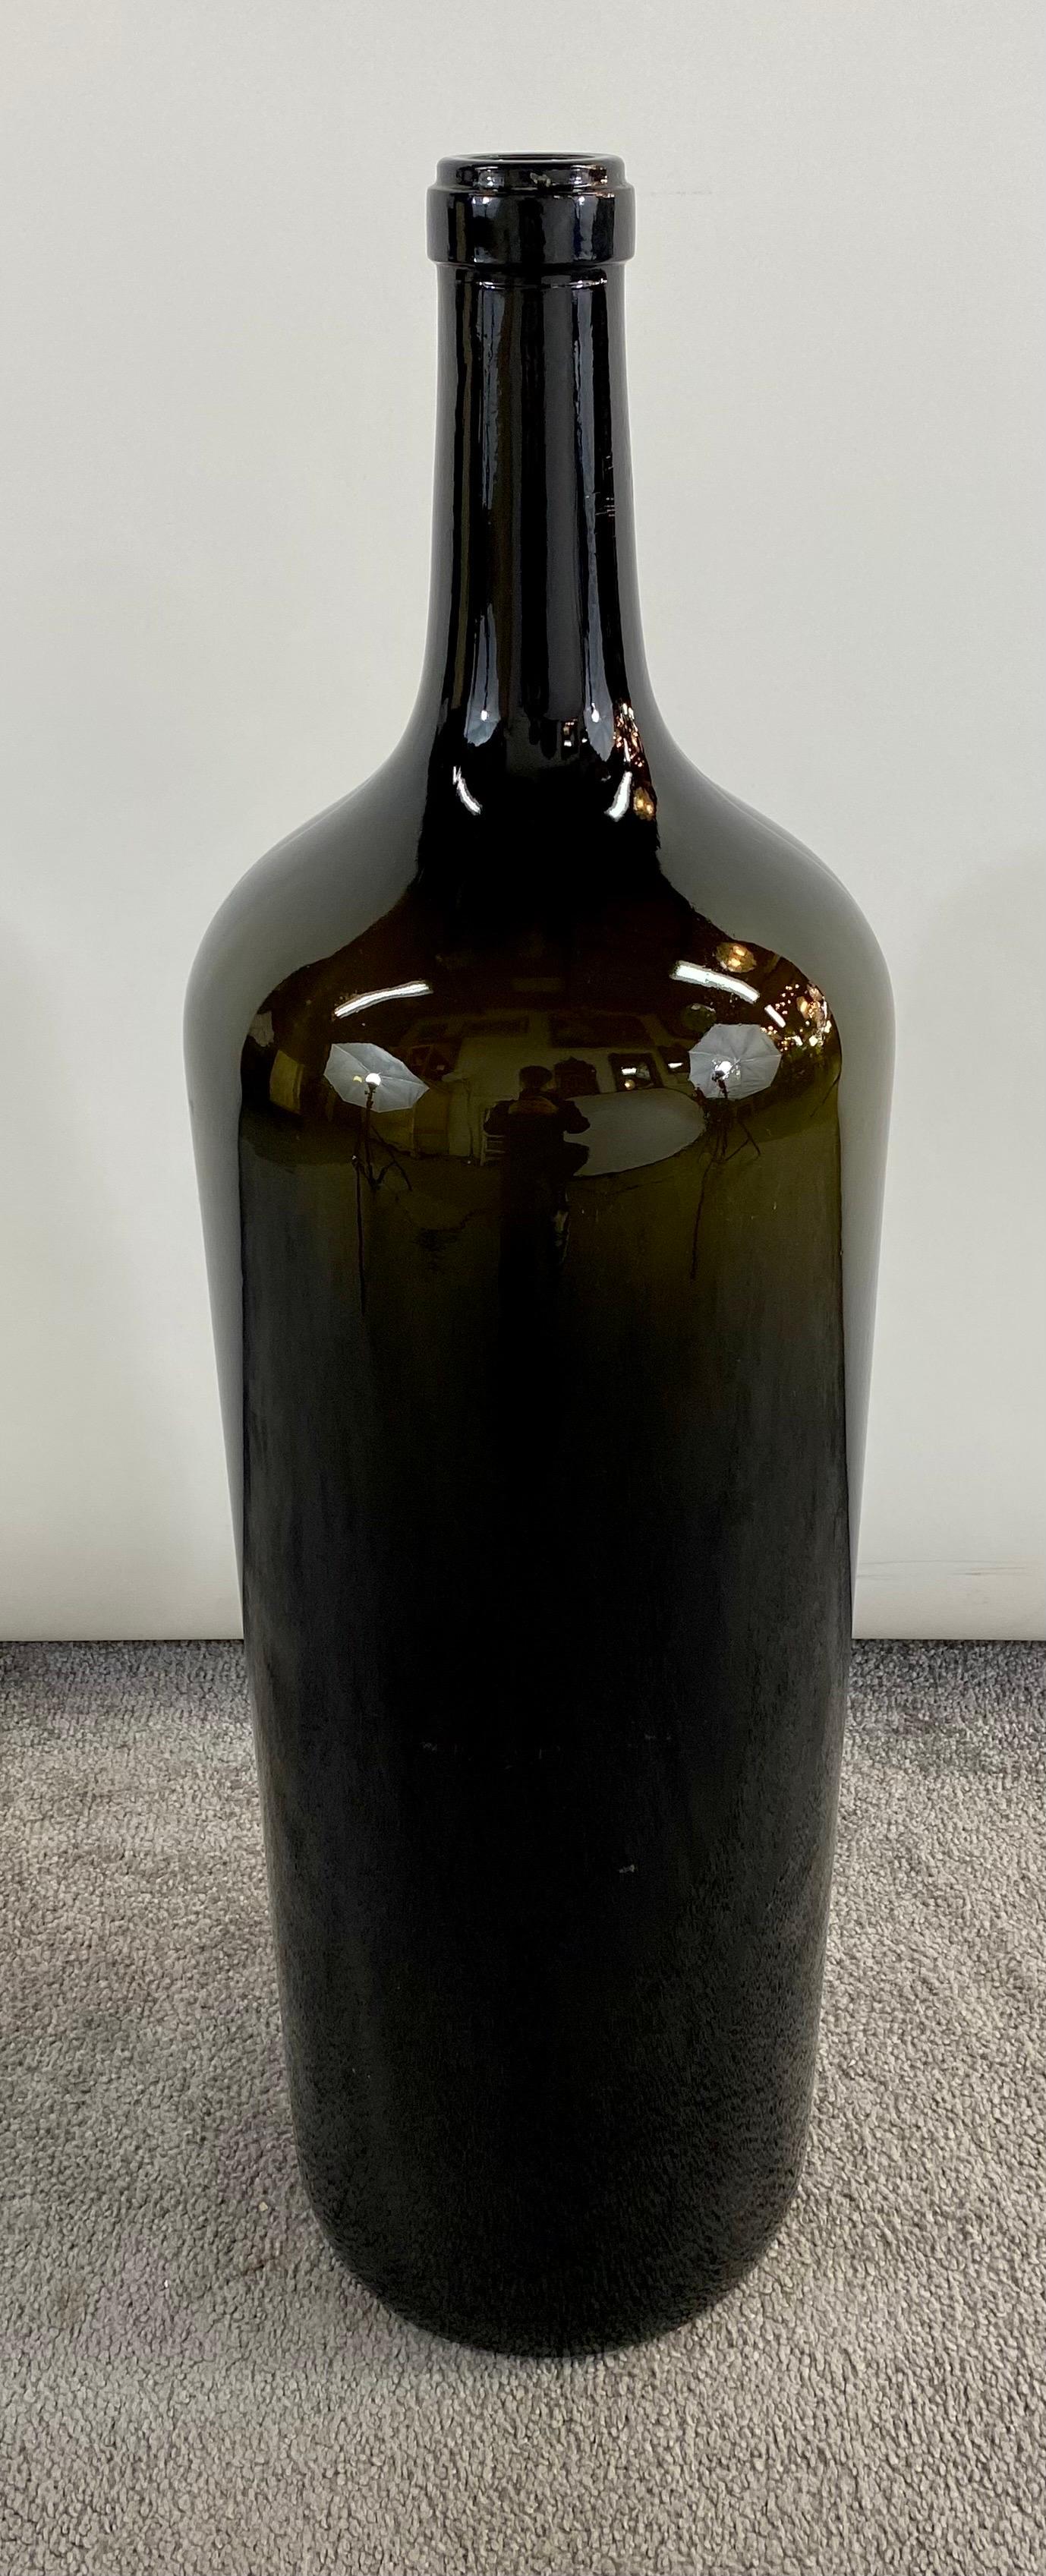 Ein großes Paar von Vintage dunkelgrün geblasenem Glas Demijohn Stil Flaschen von Weinen. Die Flaschen sind stabil und sehr dekorativ.  Verschönern Sie Ihr Zimmer oder Ihren Weinkeller mit diesen beiden großen Weinflaschen oder verwenden Sie sie als